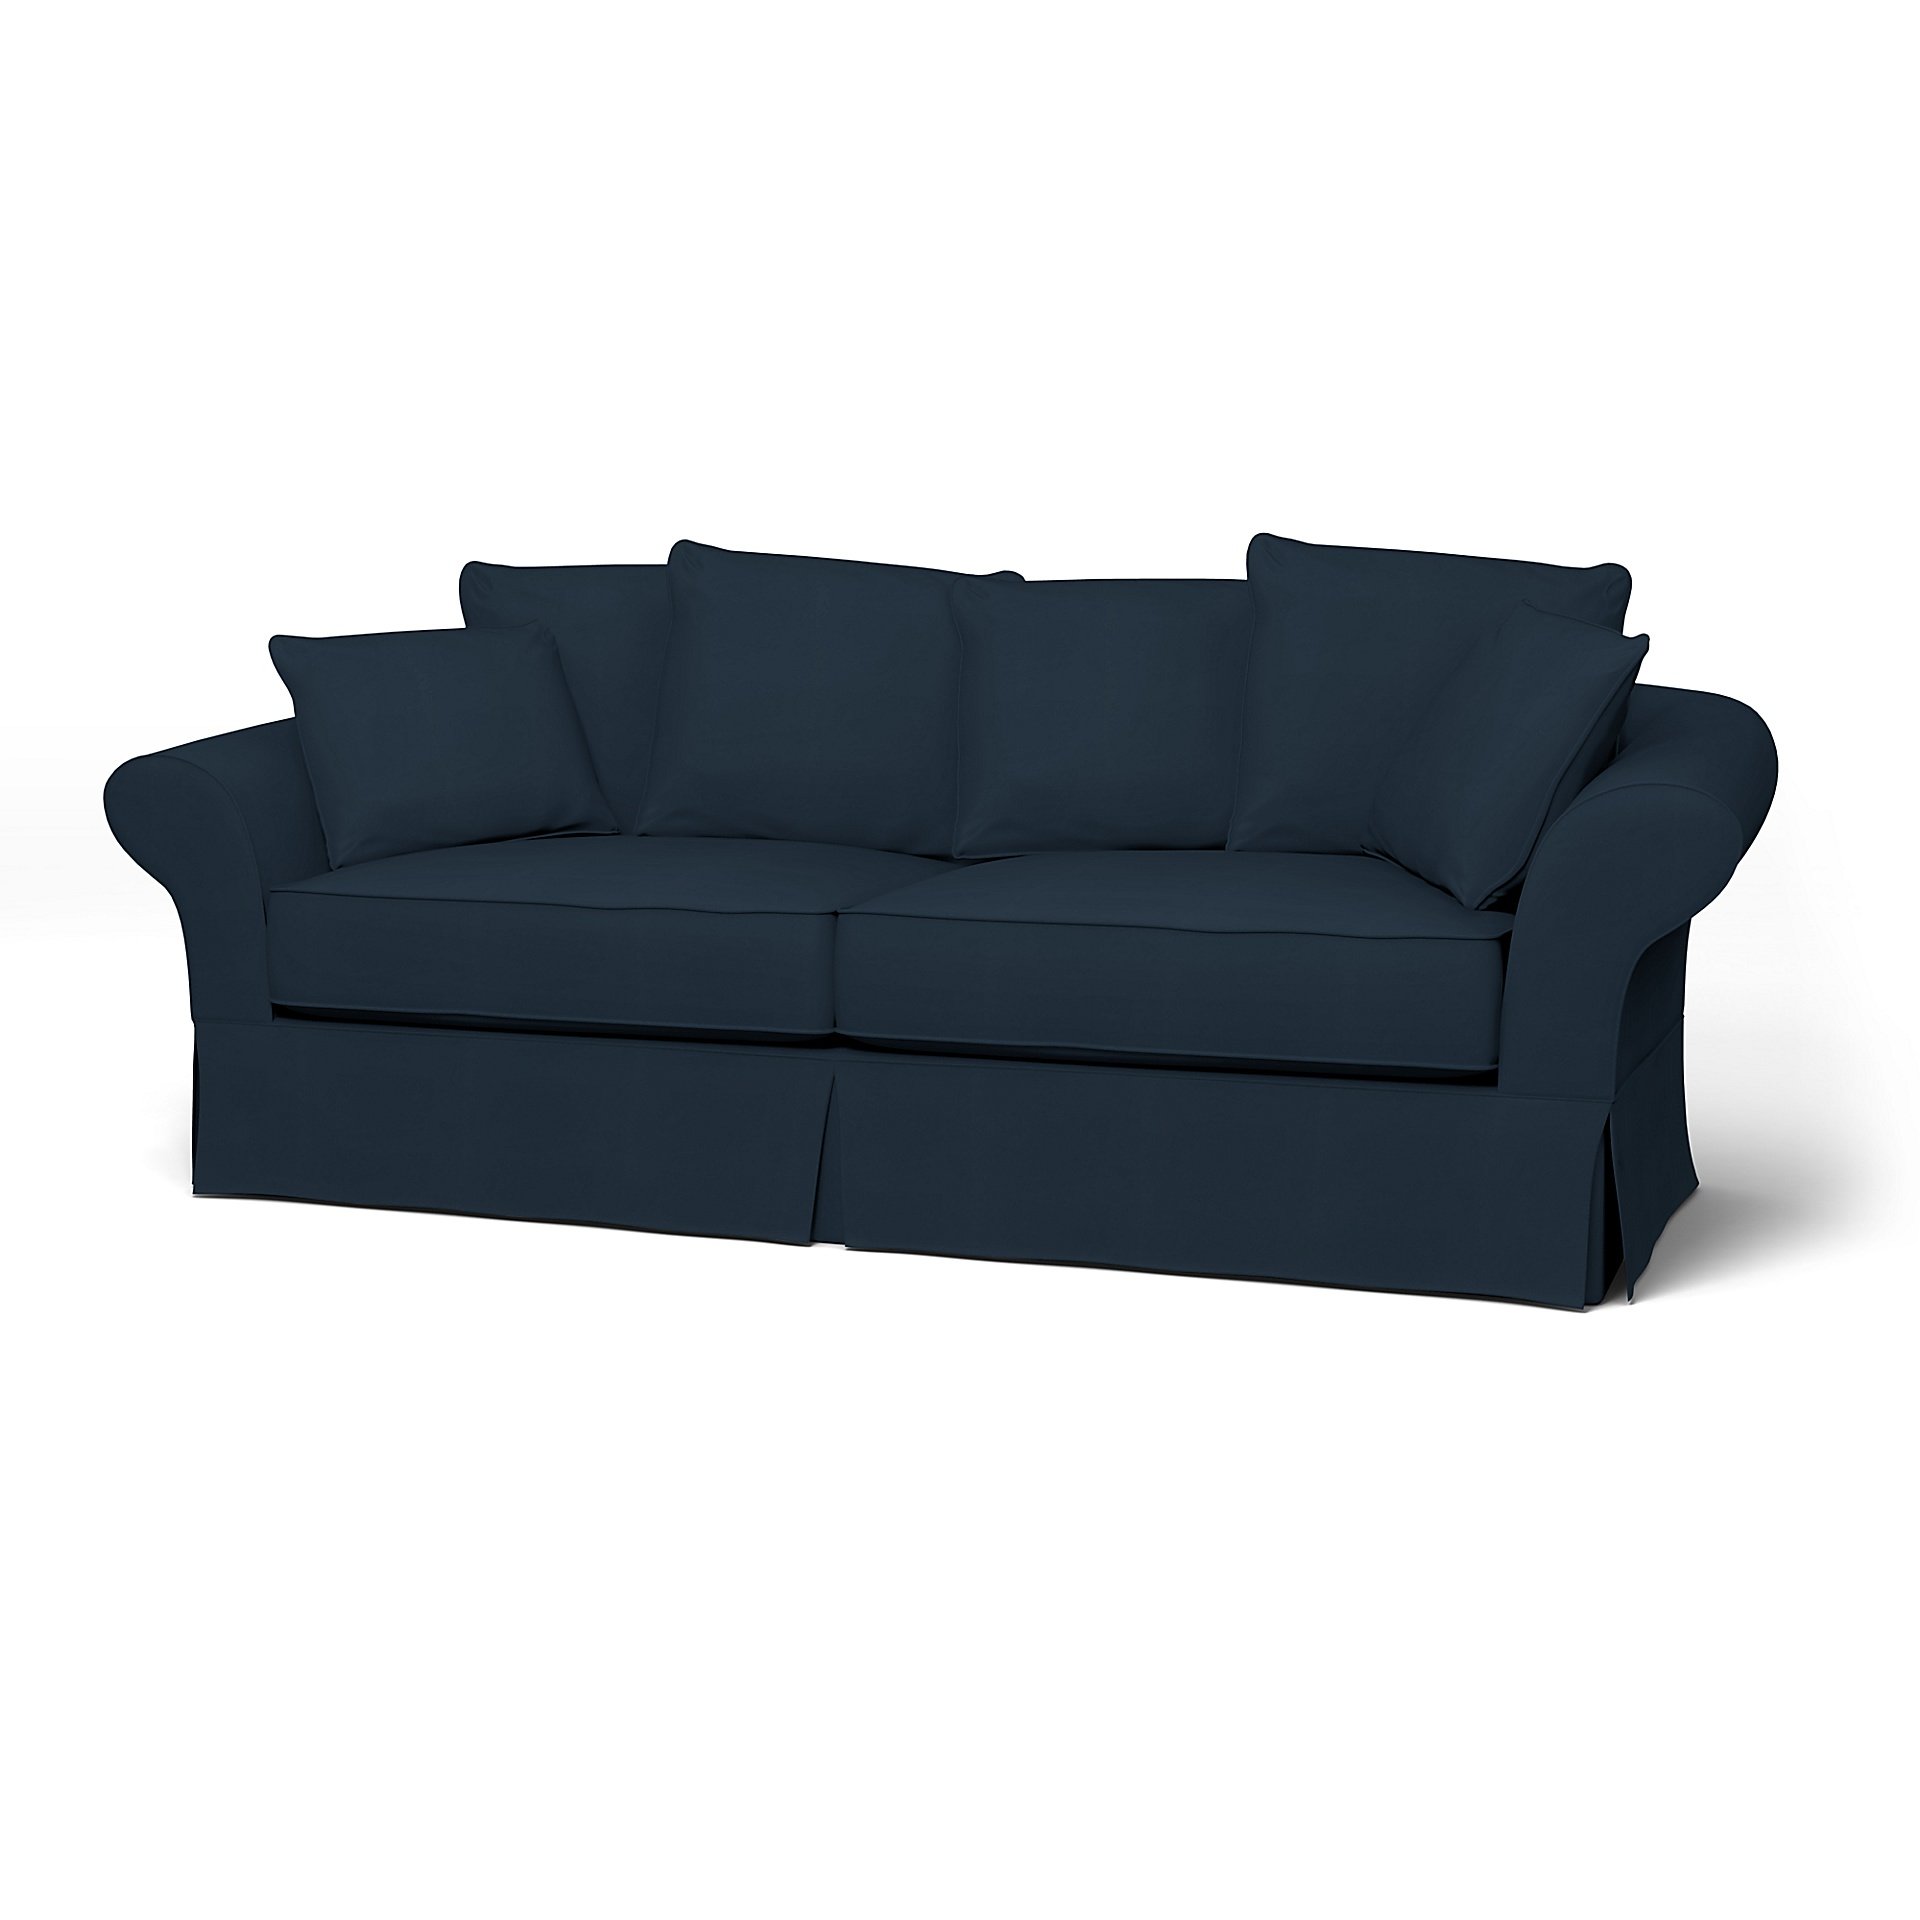 IKEA - Backamo 3 Seater Sofa Cover, Navy Blue, Cotton - Bemz